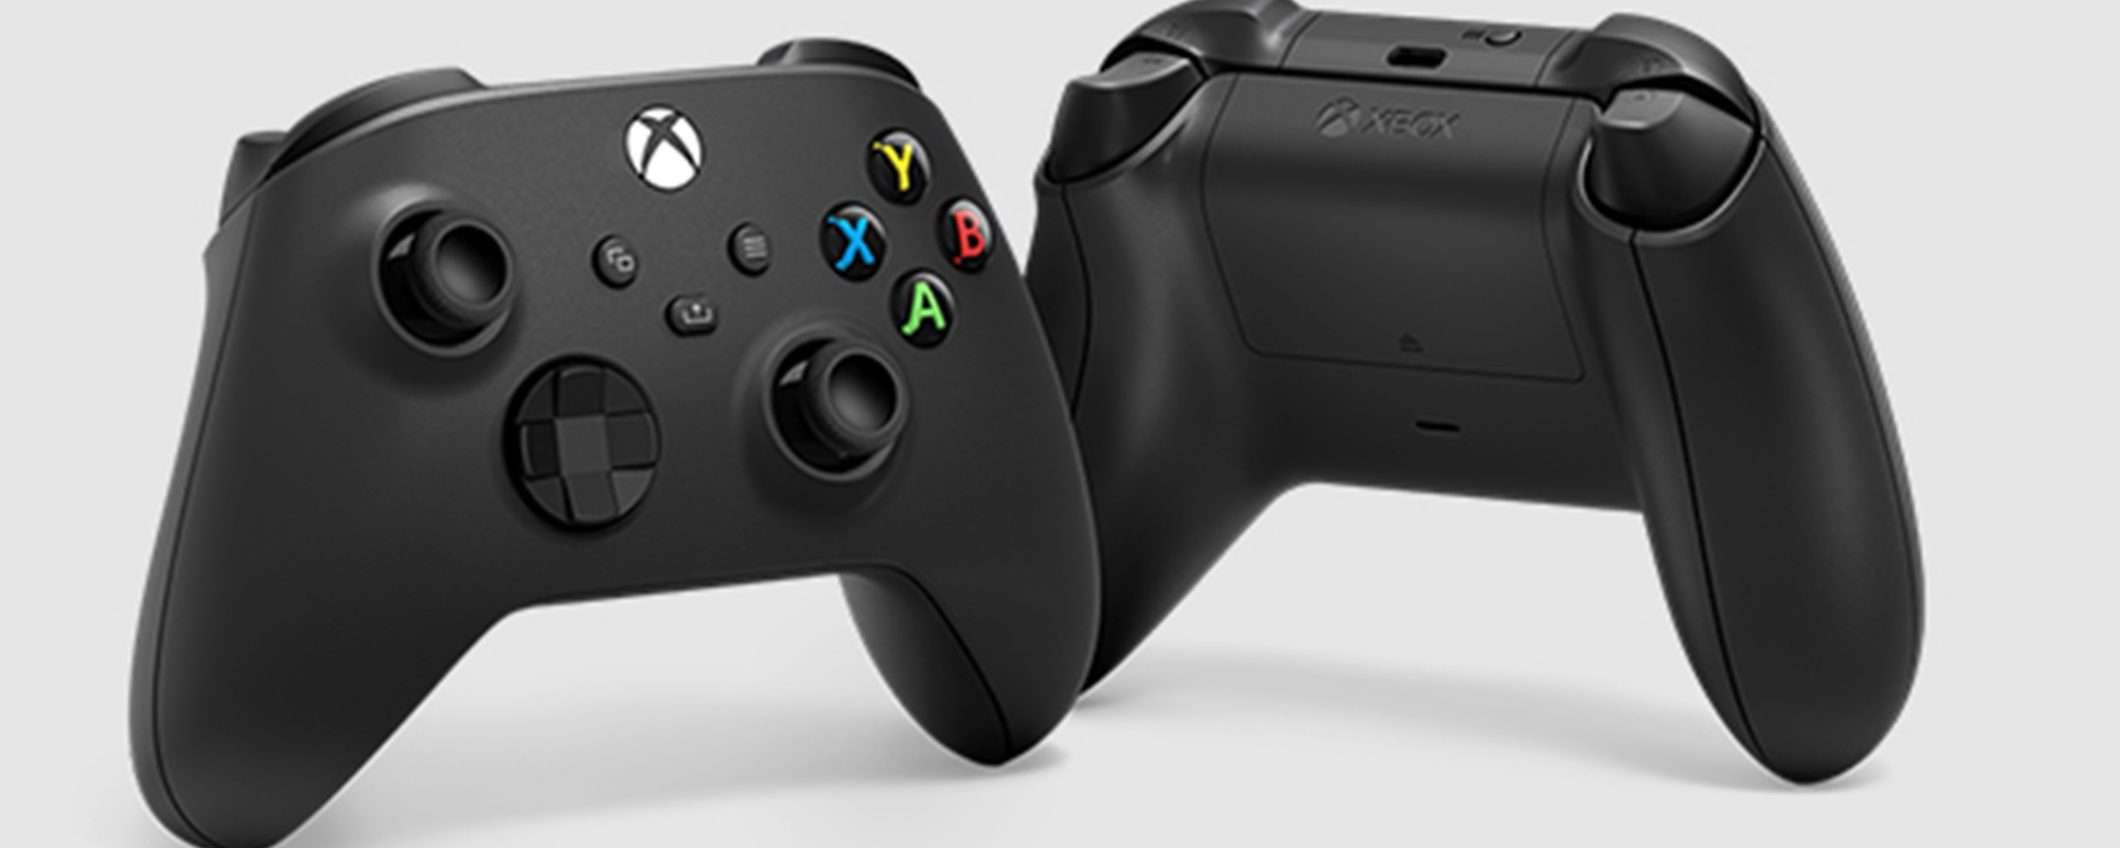 Controller Wireless Xbox: l'elegante versione Nera a soli 45€ su Amazon